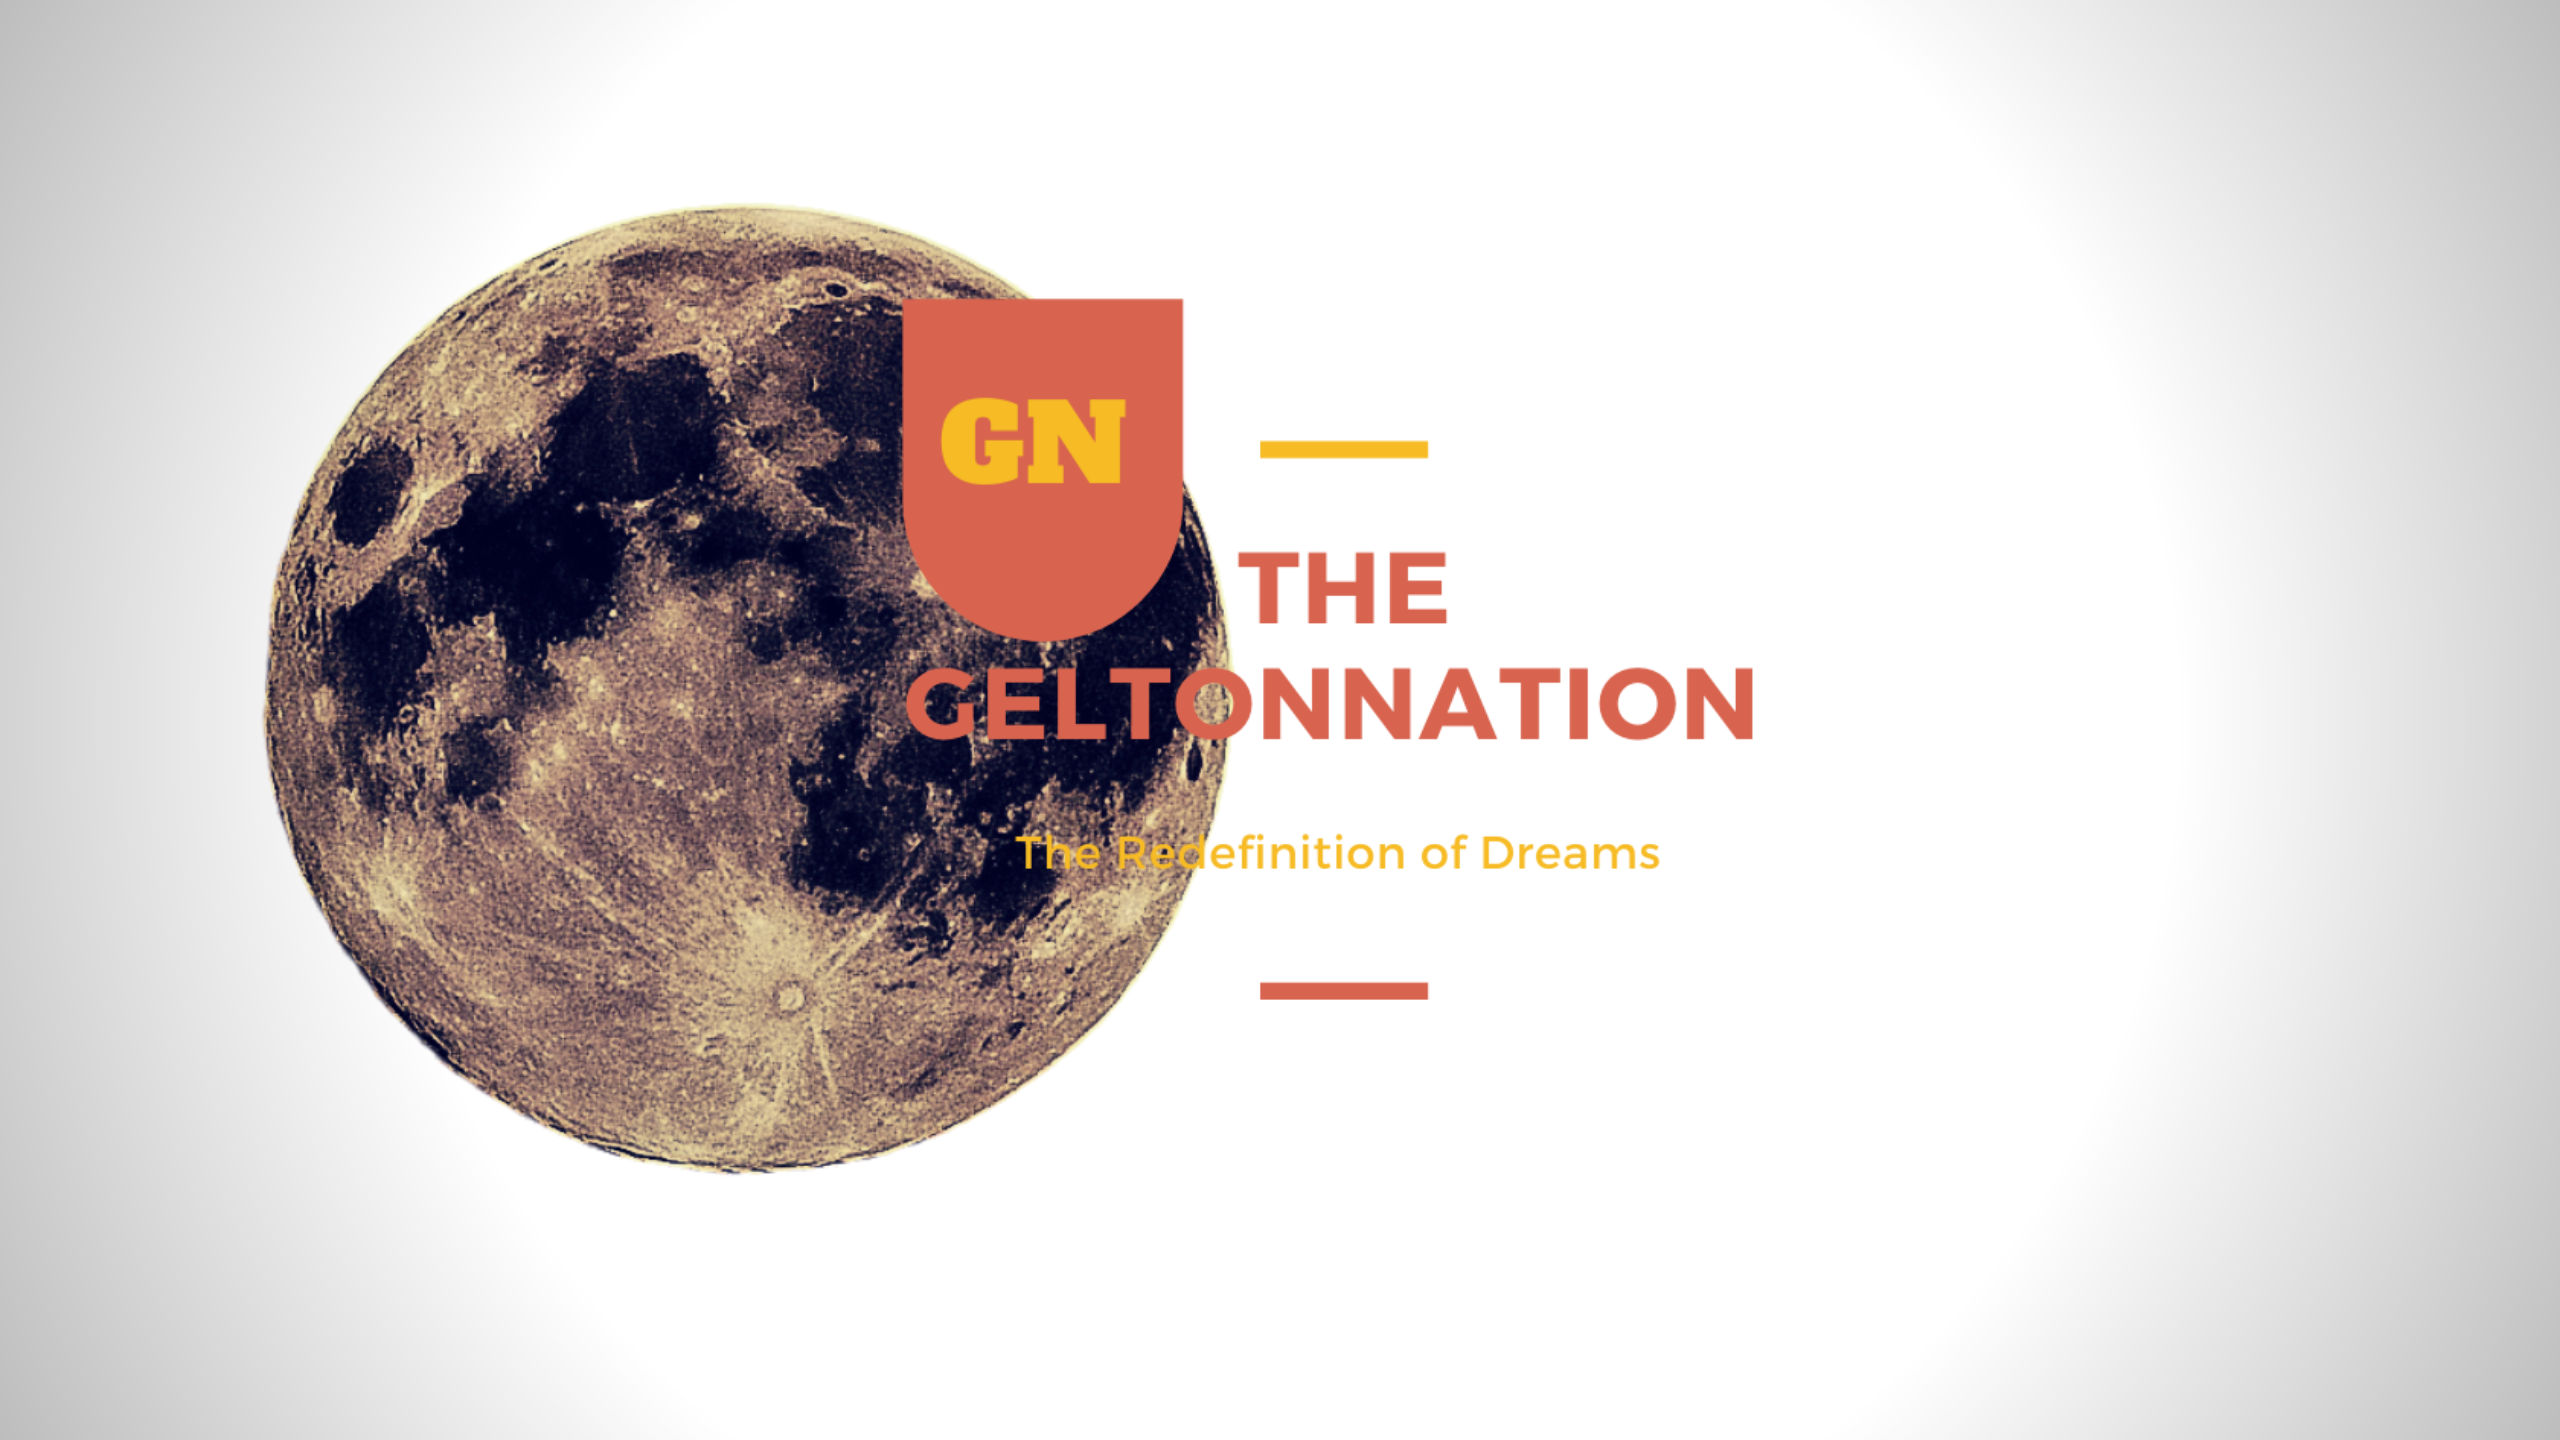 The GeltonNation